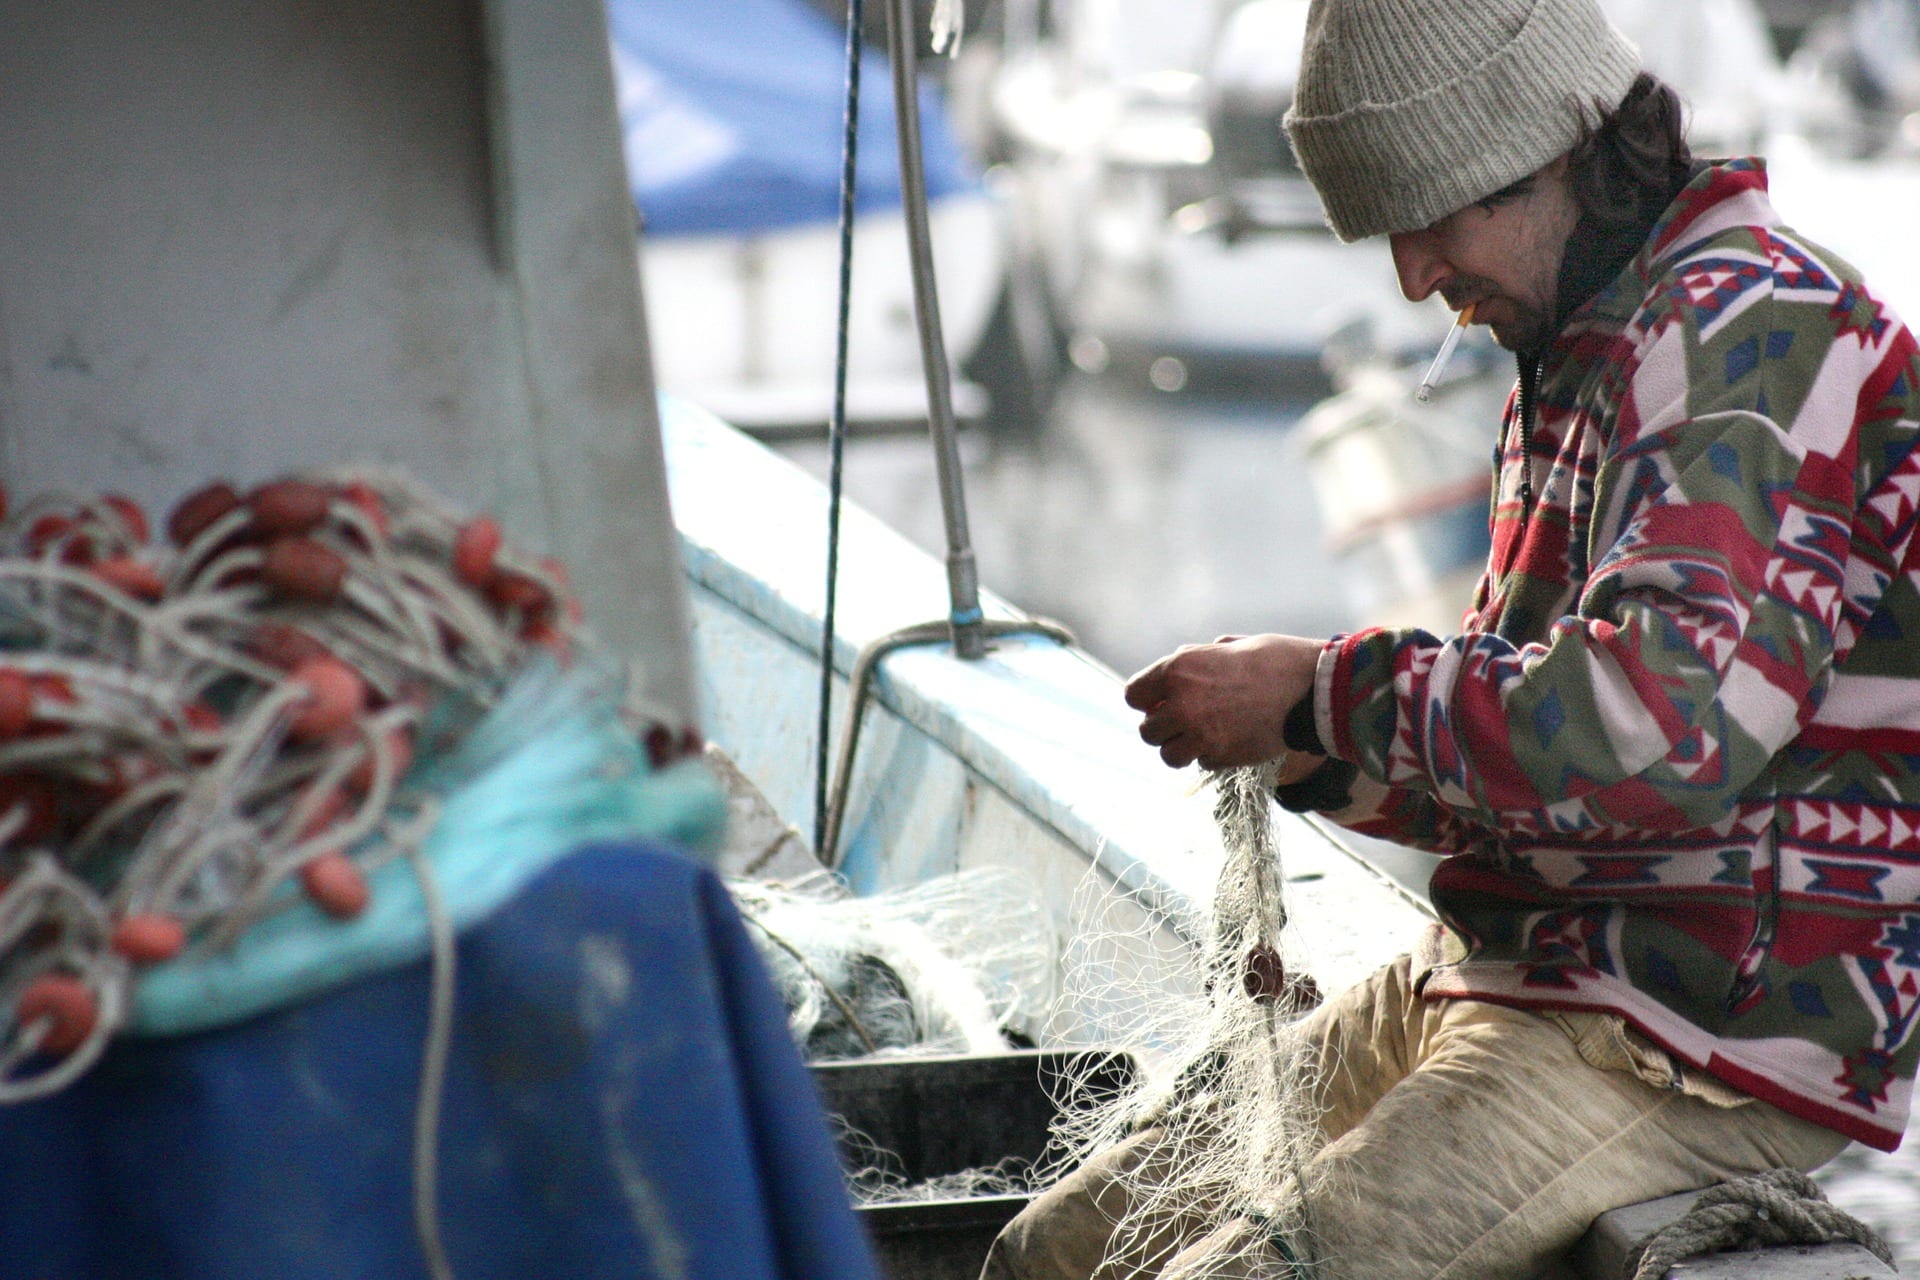 Tutela previdenziale pescatori previste dal Decreto Agosto